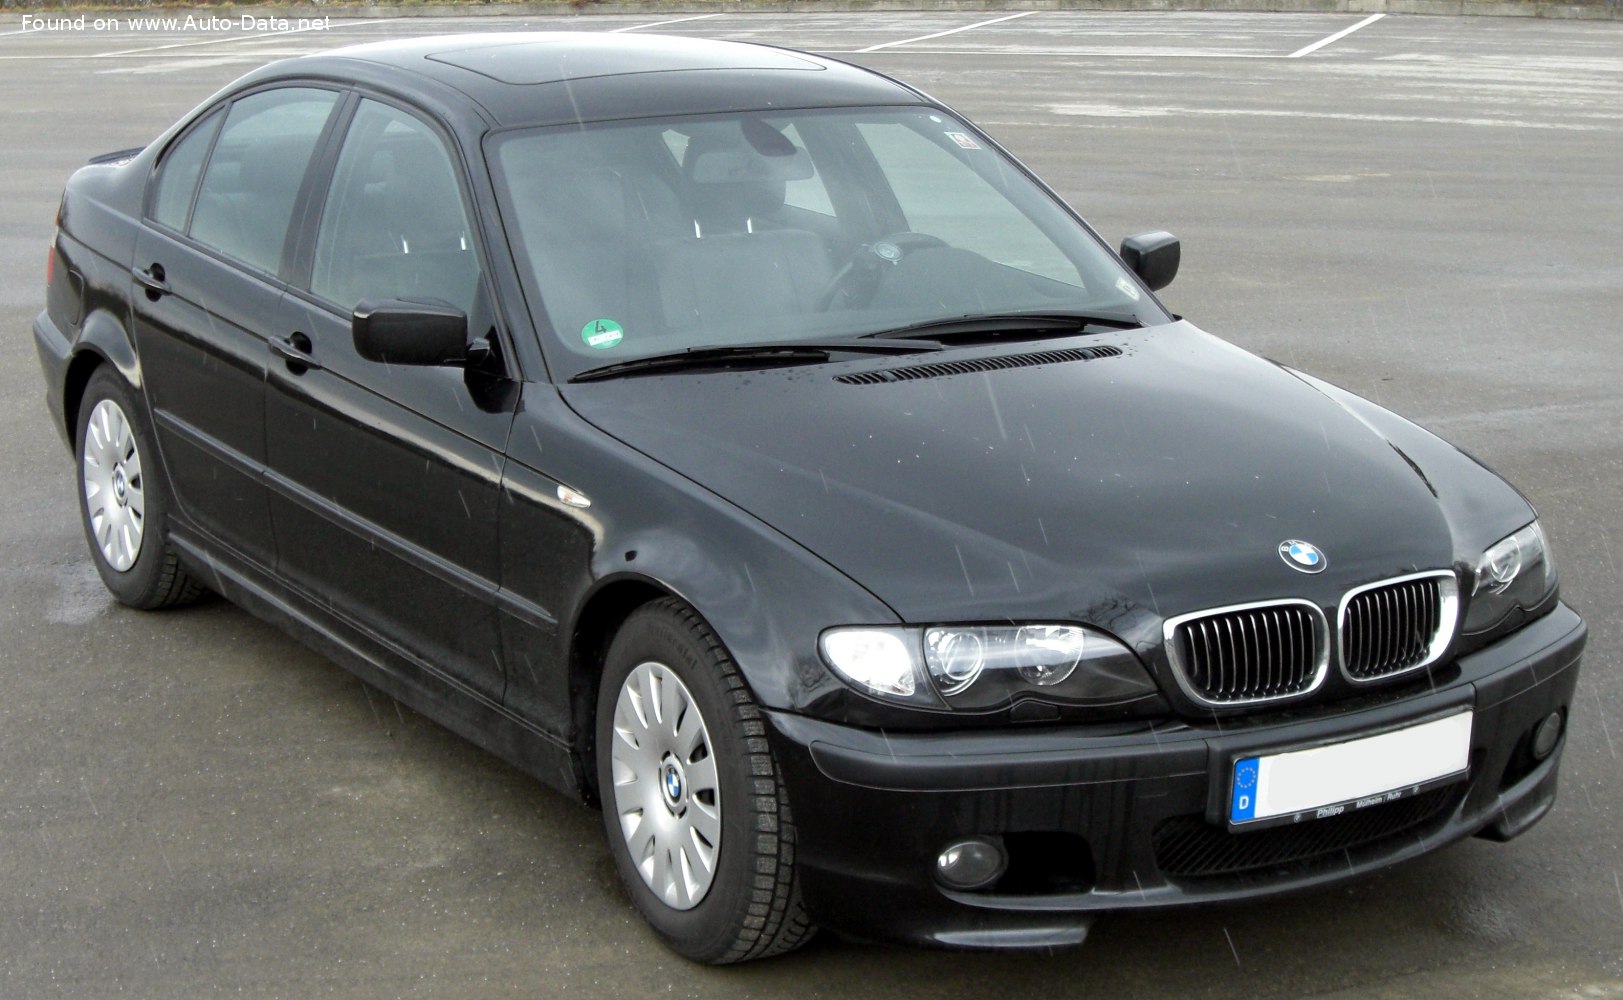 Arruinado Ver a través de fuerte 2003 BMW 3 Series Sedan (E46, facelift 2001) 330d (204 Hp) | Technical  specs, data, fuel consumption, Dimensions